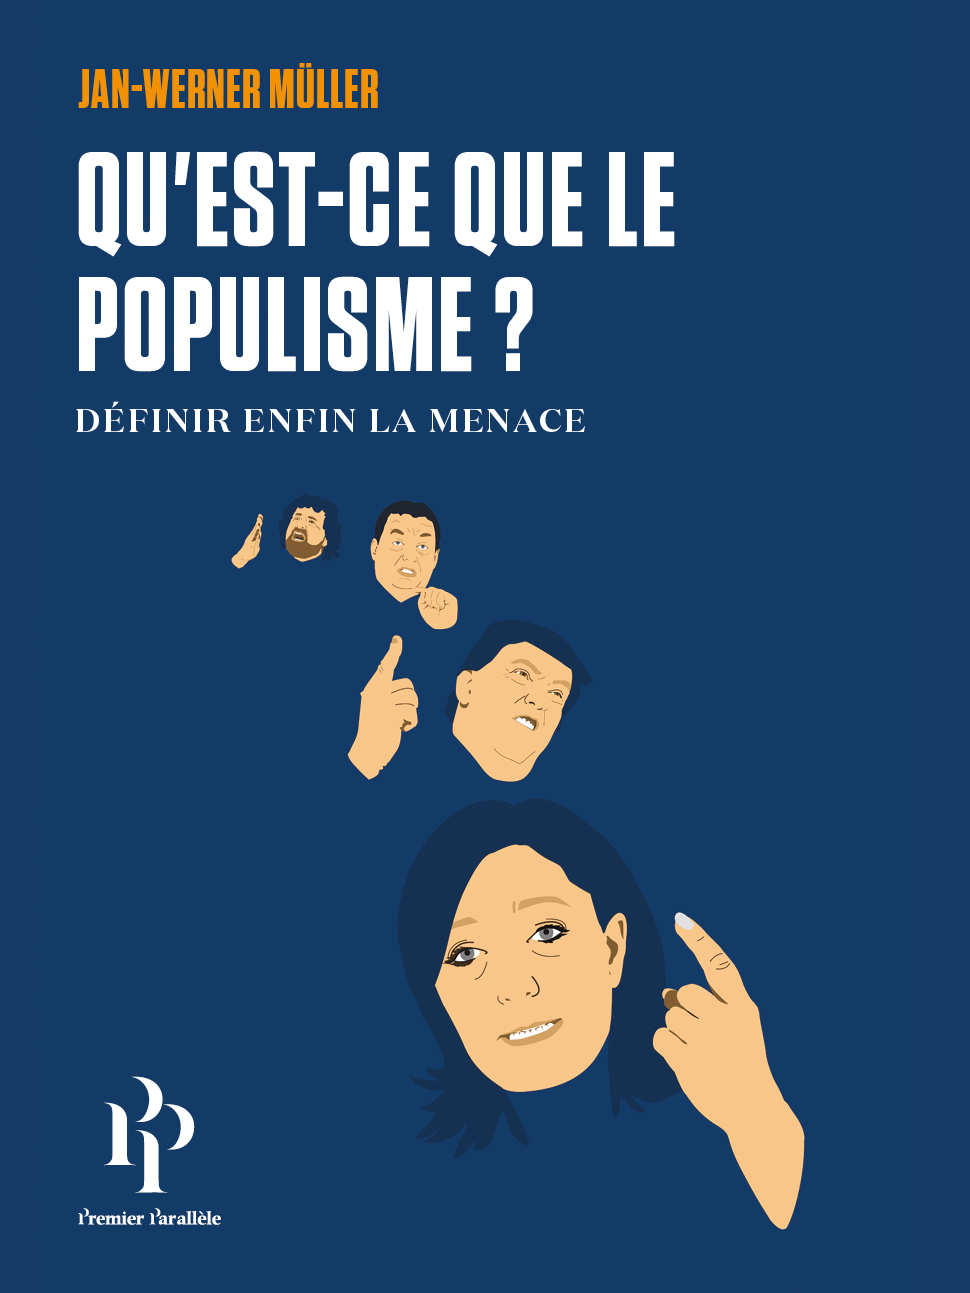 Qu Est Ce Que La Dot Qu’est-ce que le populisme? :: Premier Parallele